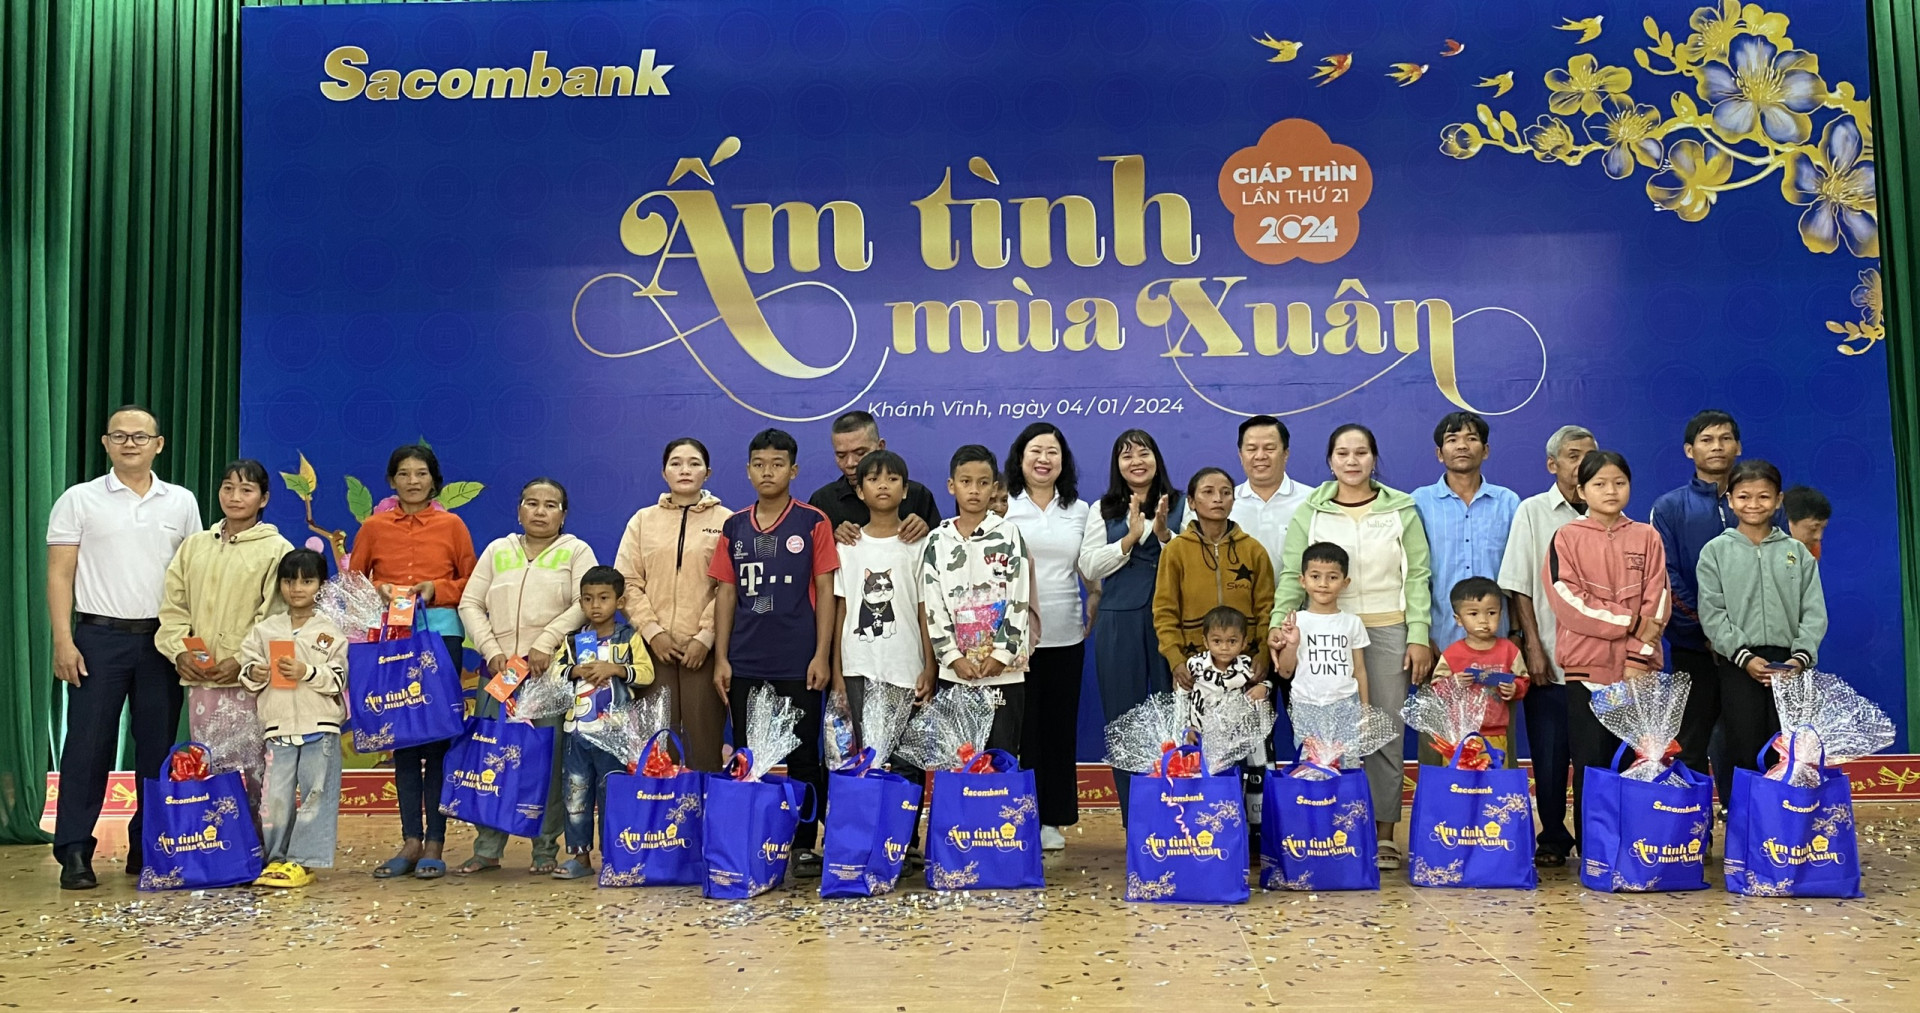 Lãnh đạo Sacombank và huyện Khánh Vĩnh trao tặng quà Tết cho người nghèo của huyện Khánh Vĩnh.